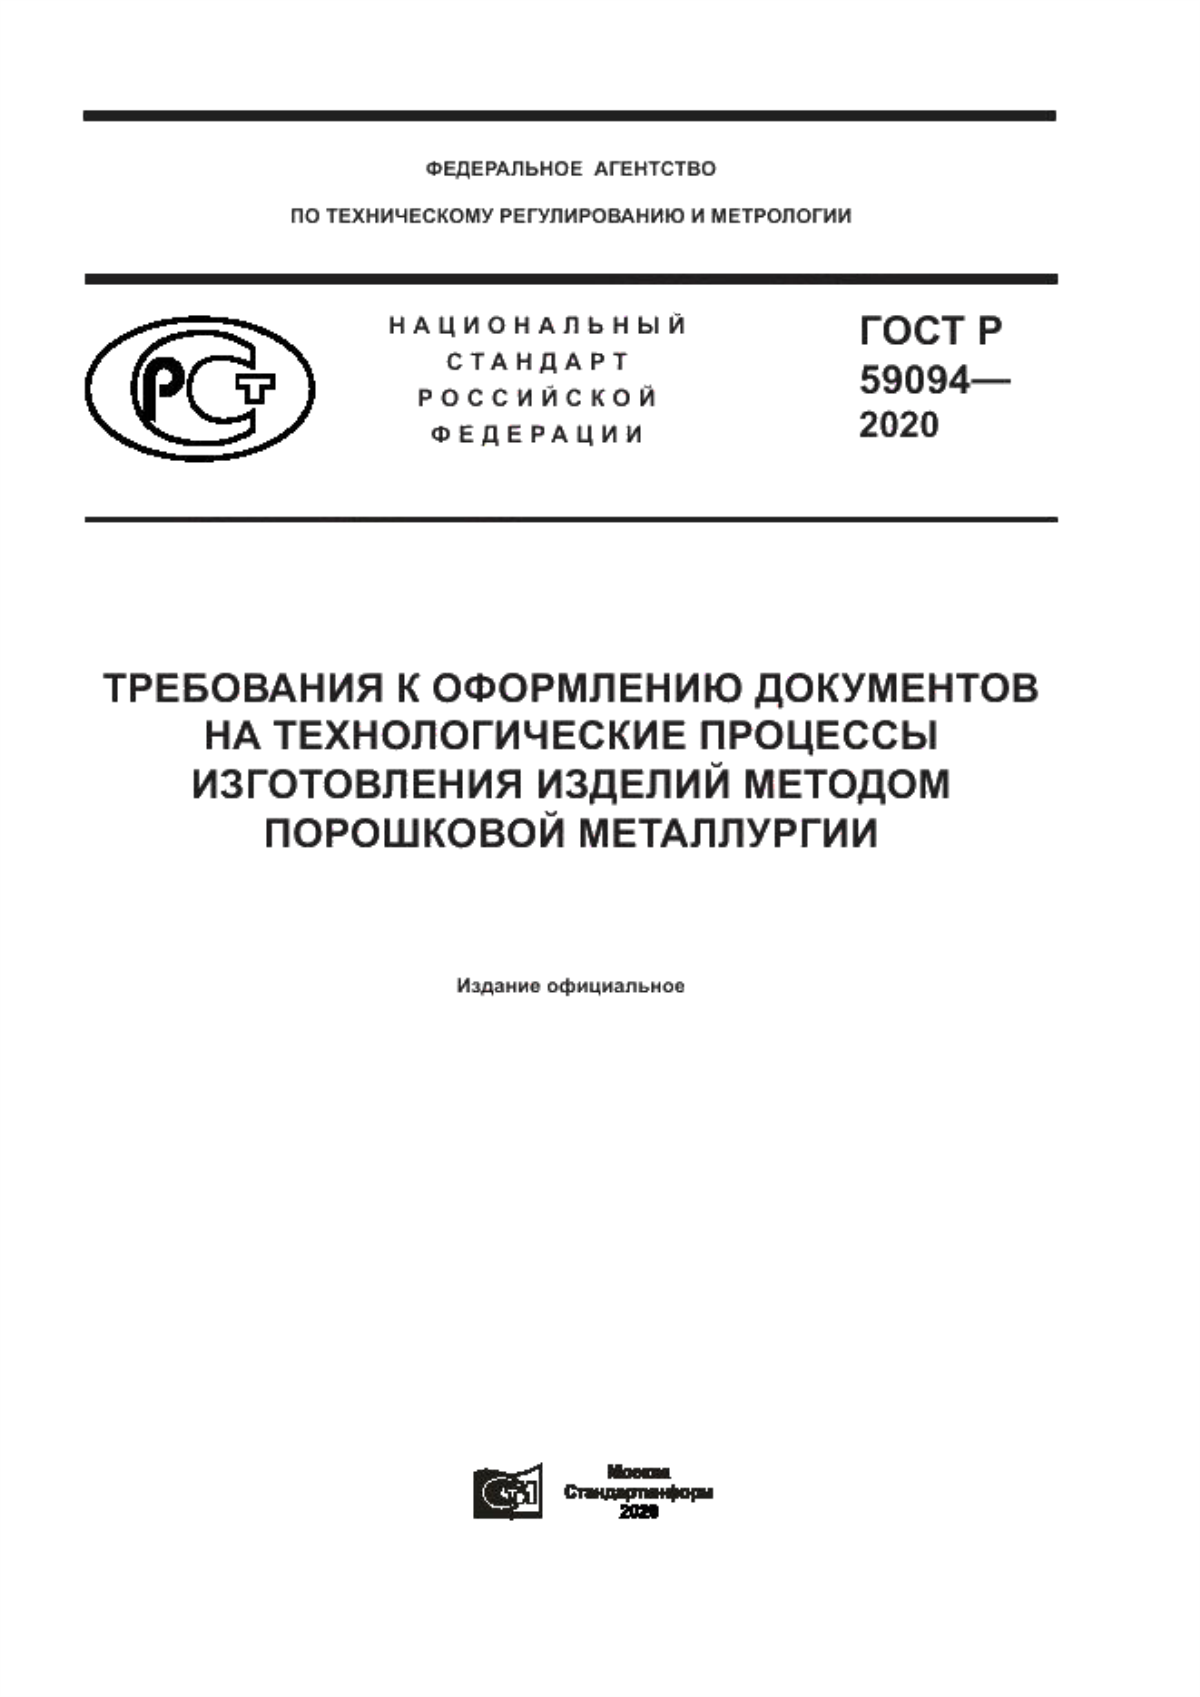 ГОСТ Р 59094-2020 Требования к оформлению документов на технологические процессы изготовления изделий методом порошковой металлургии